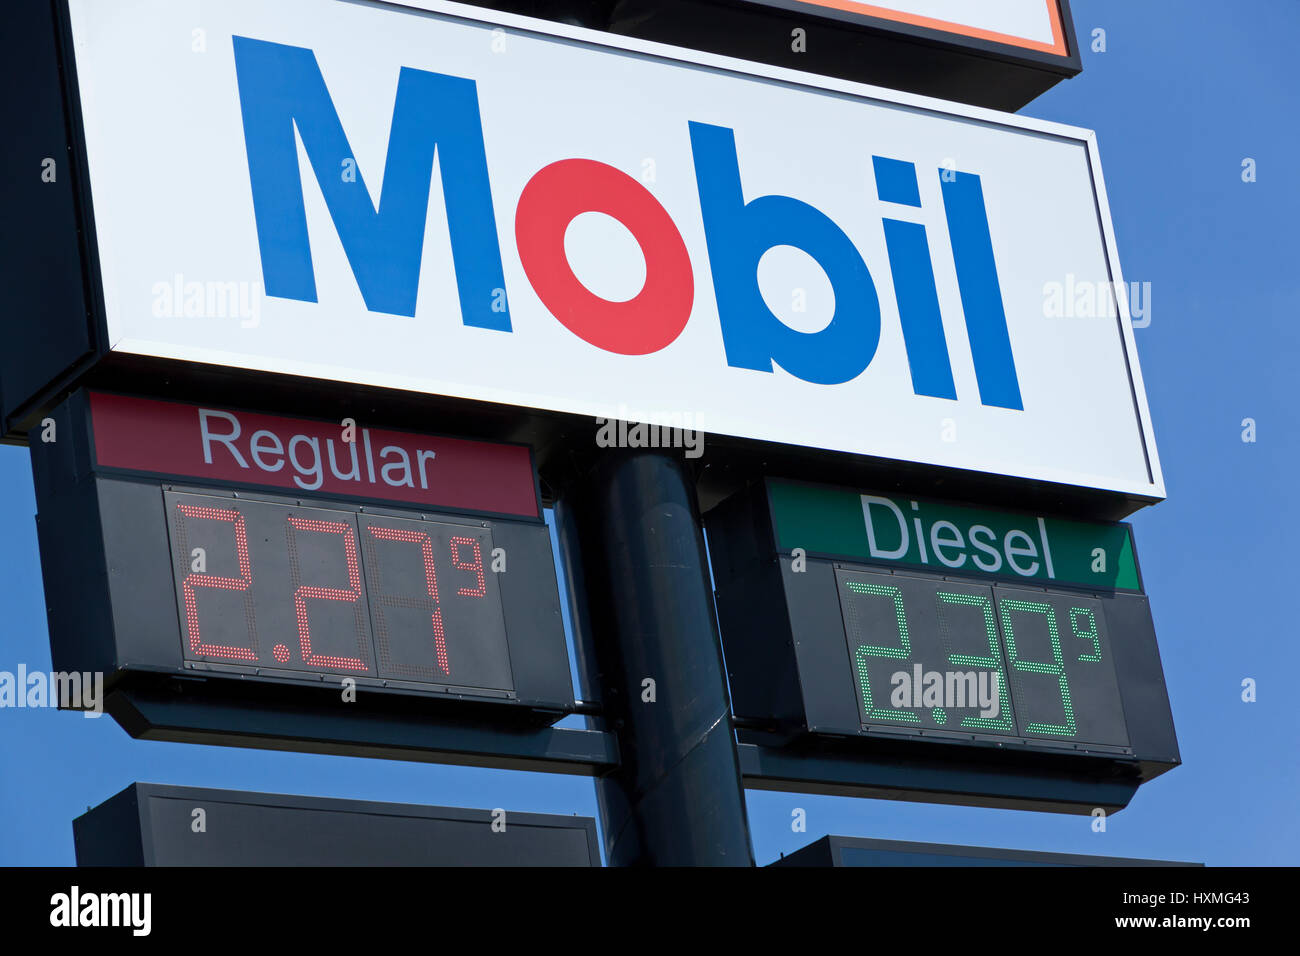 Mobil segno pubblicità regolari e gasolio bassa dei prezzi del gas. Foto Stock